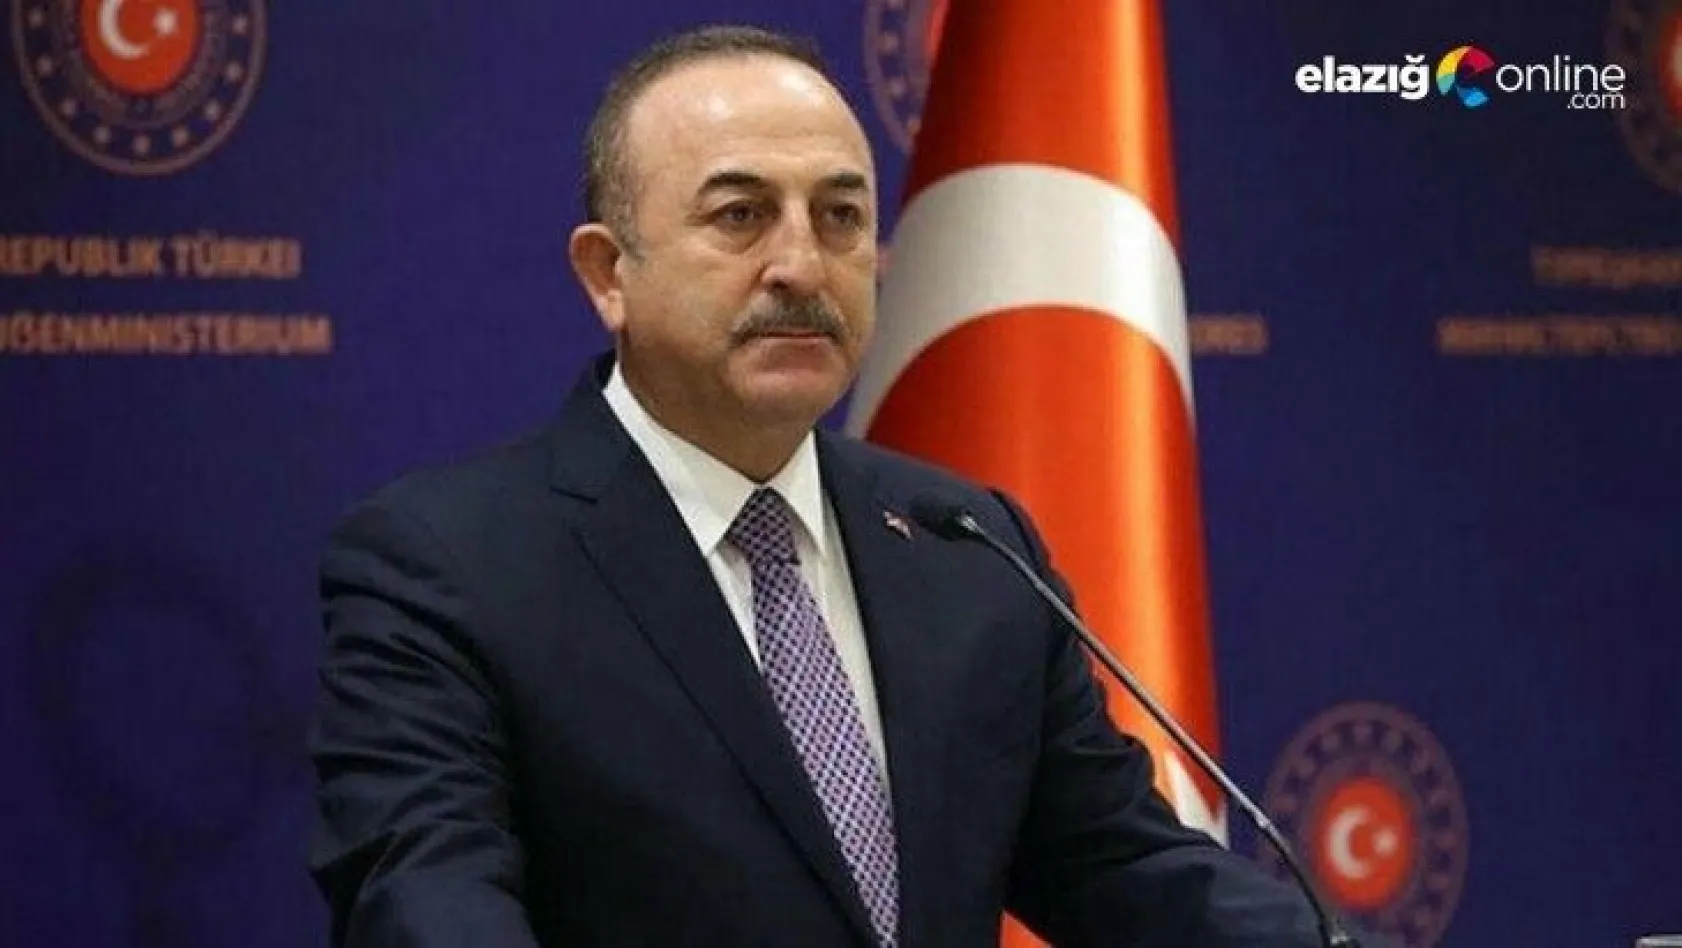 Bakan Çavuşoğlu: Türkiye olarak hiçbir ülke ile kötü ilişkilerimiz olsun istemeyiz